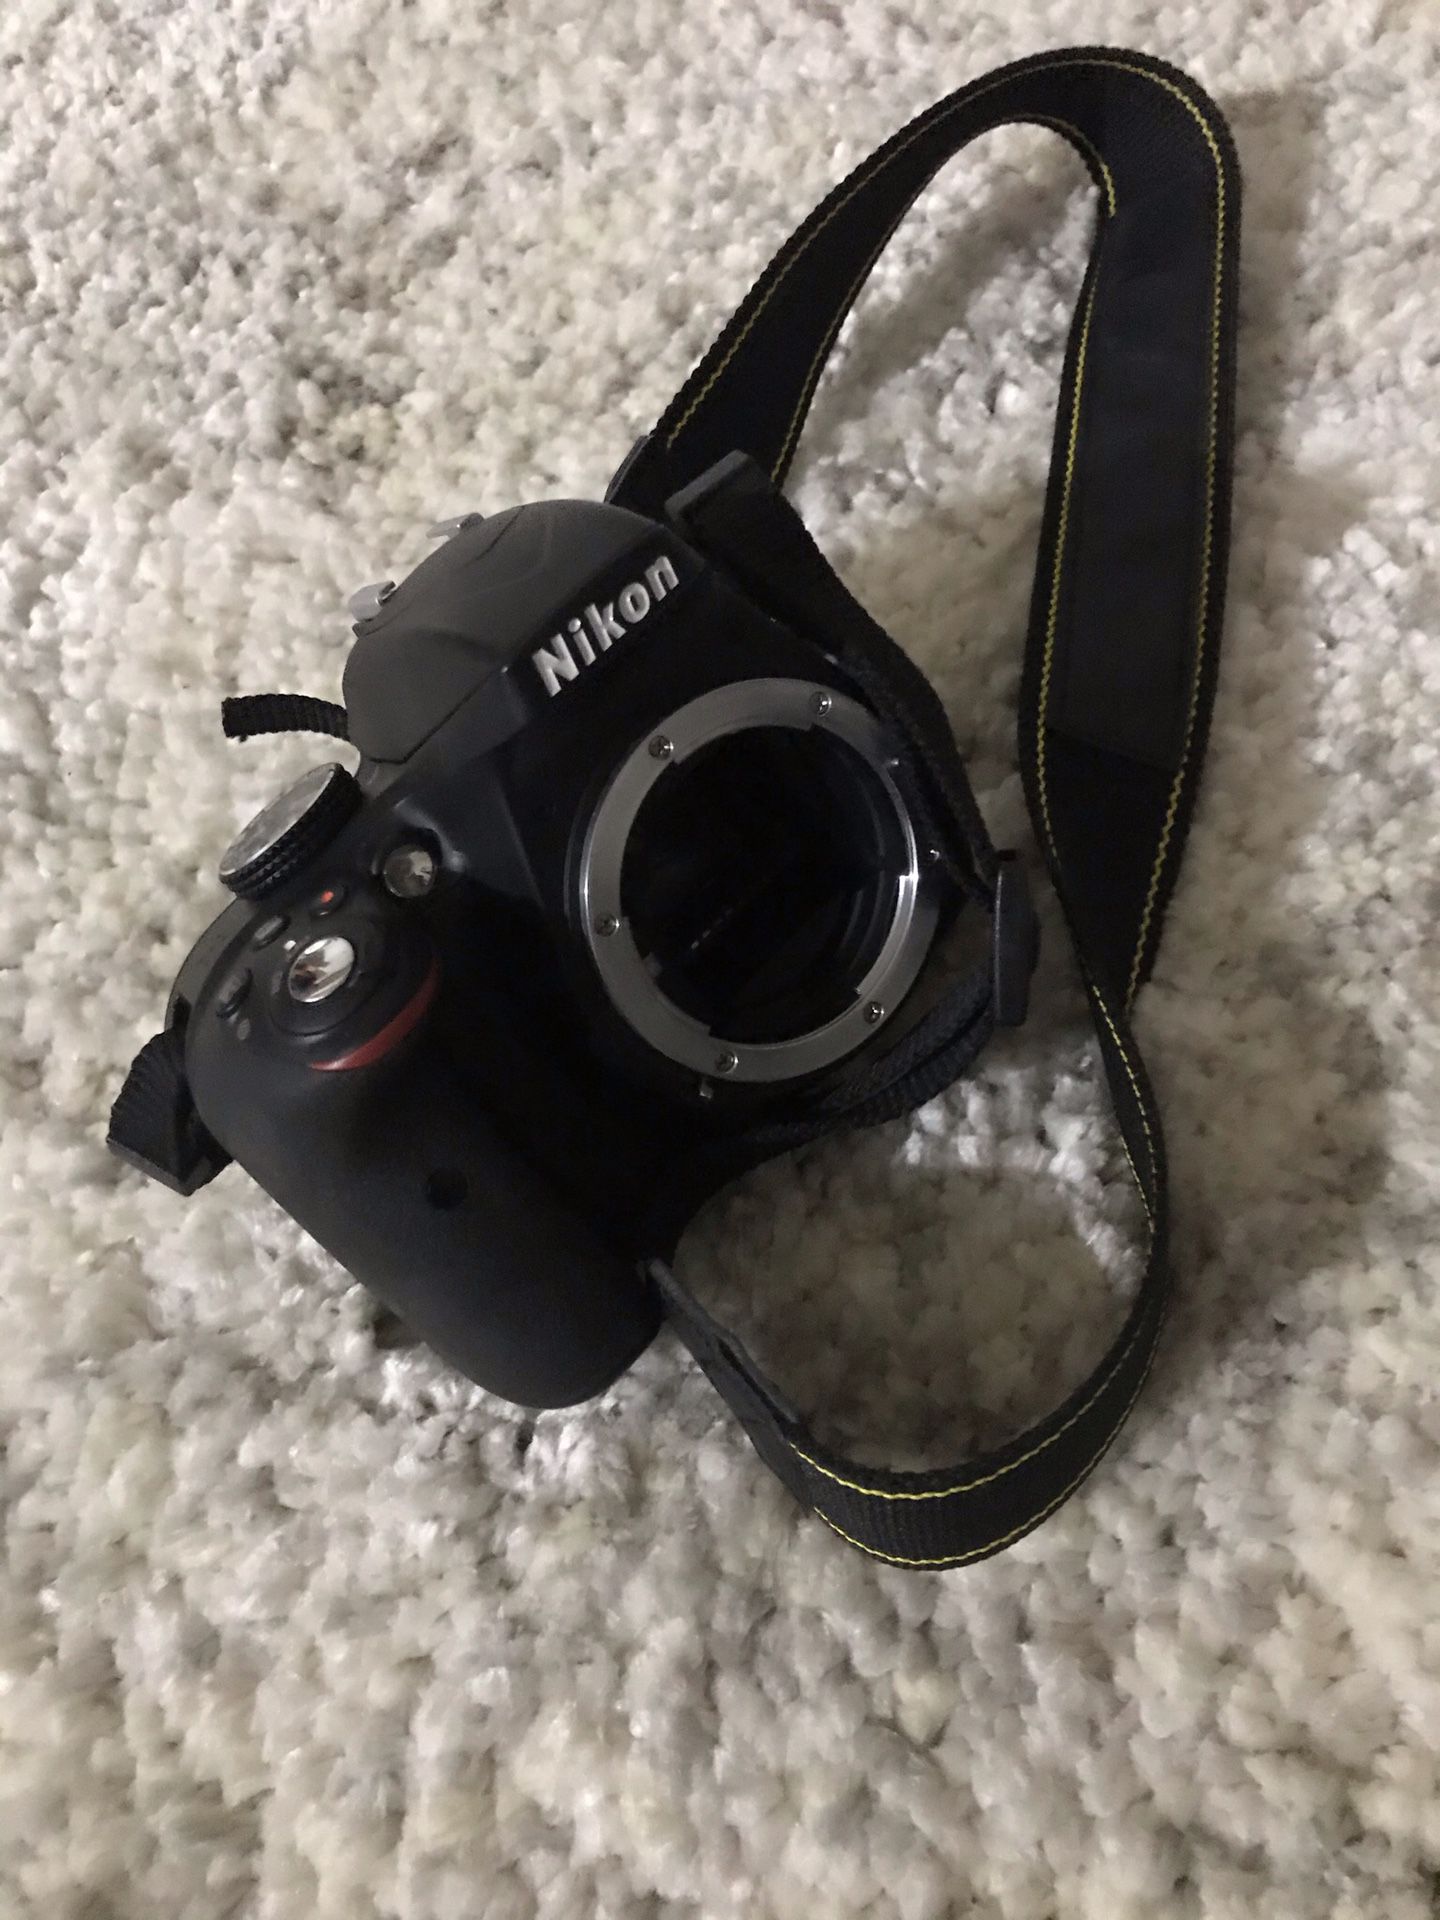 Nikon D330 Dslr Camera